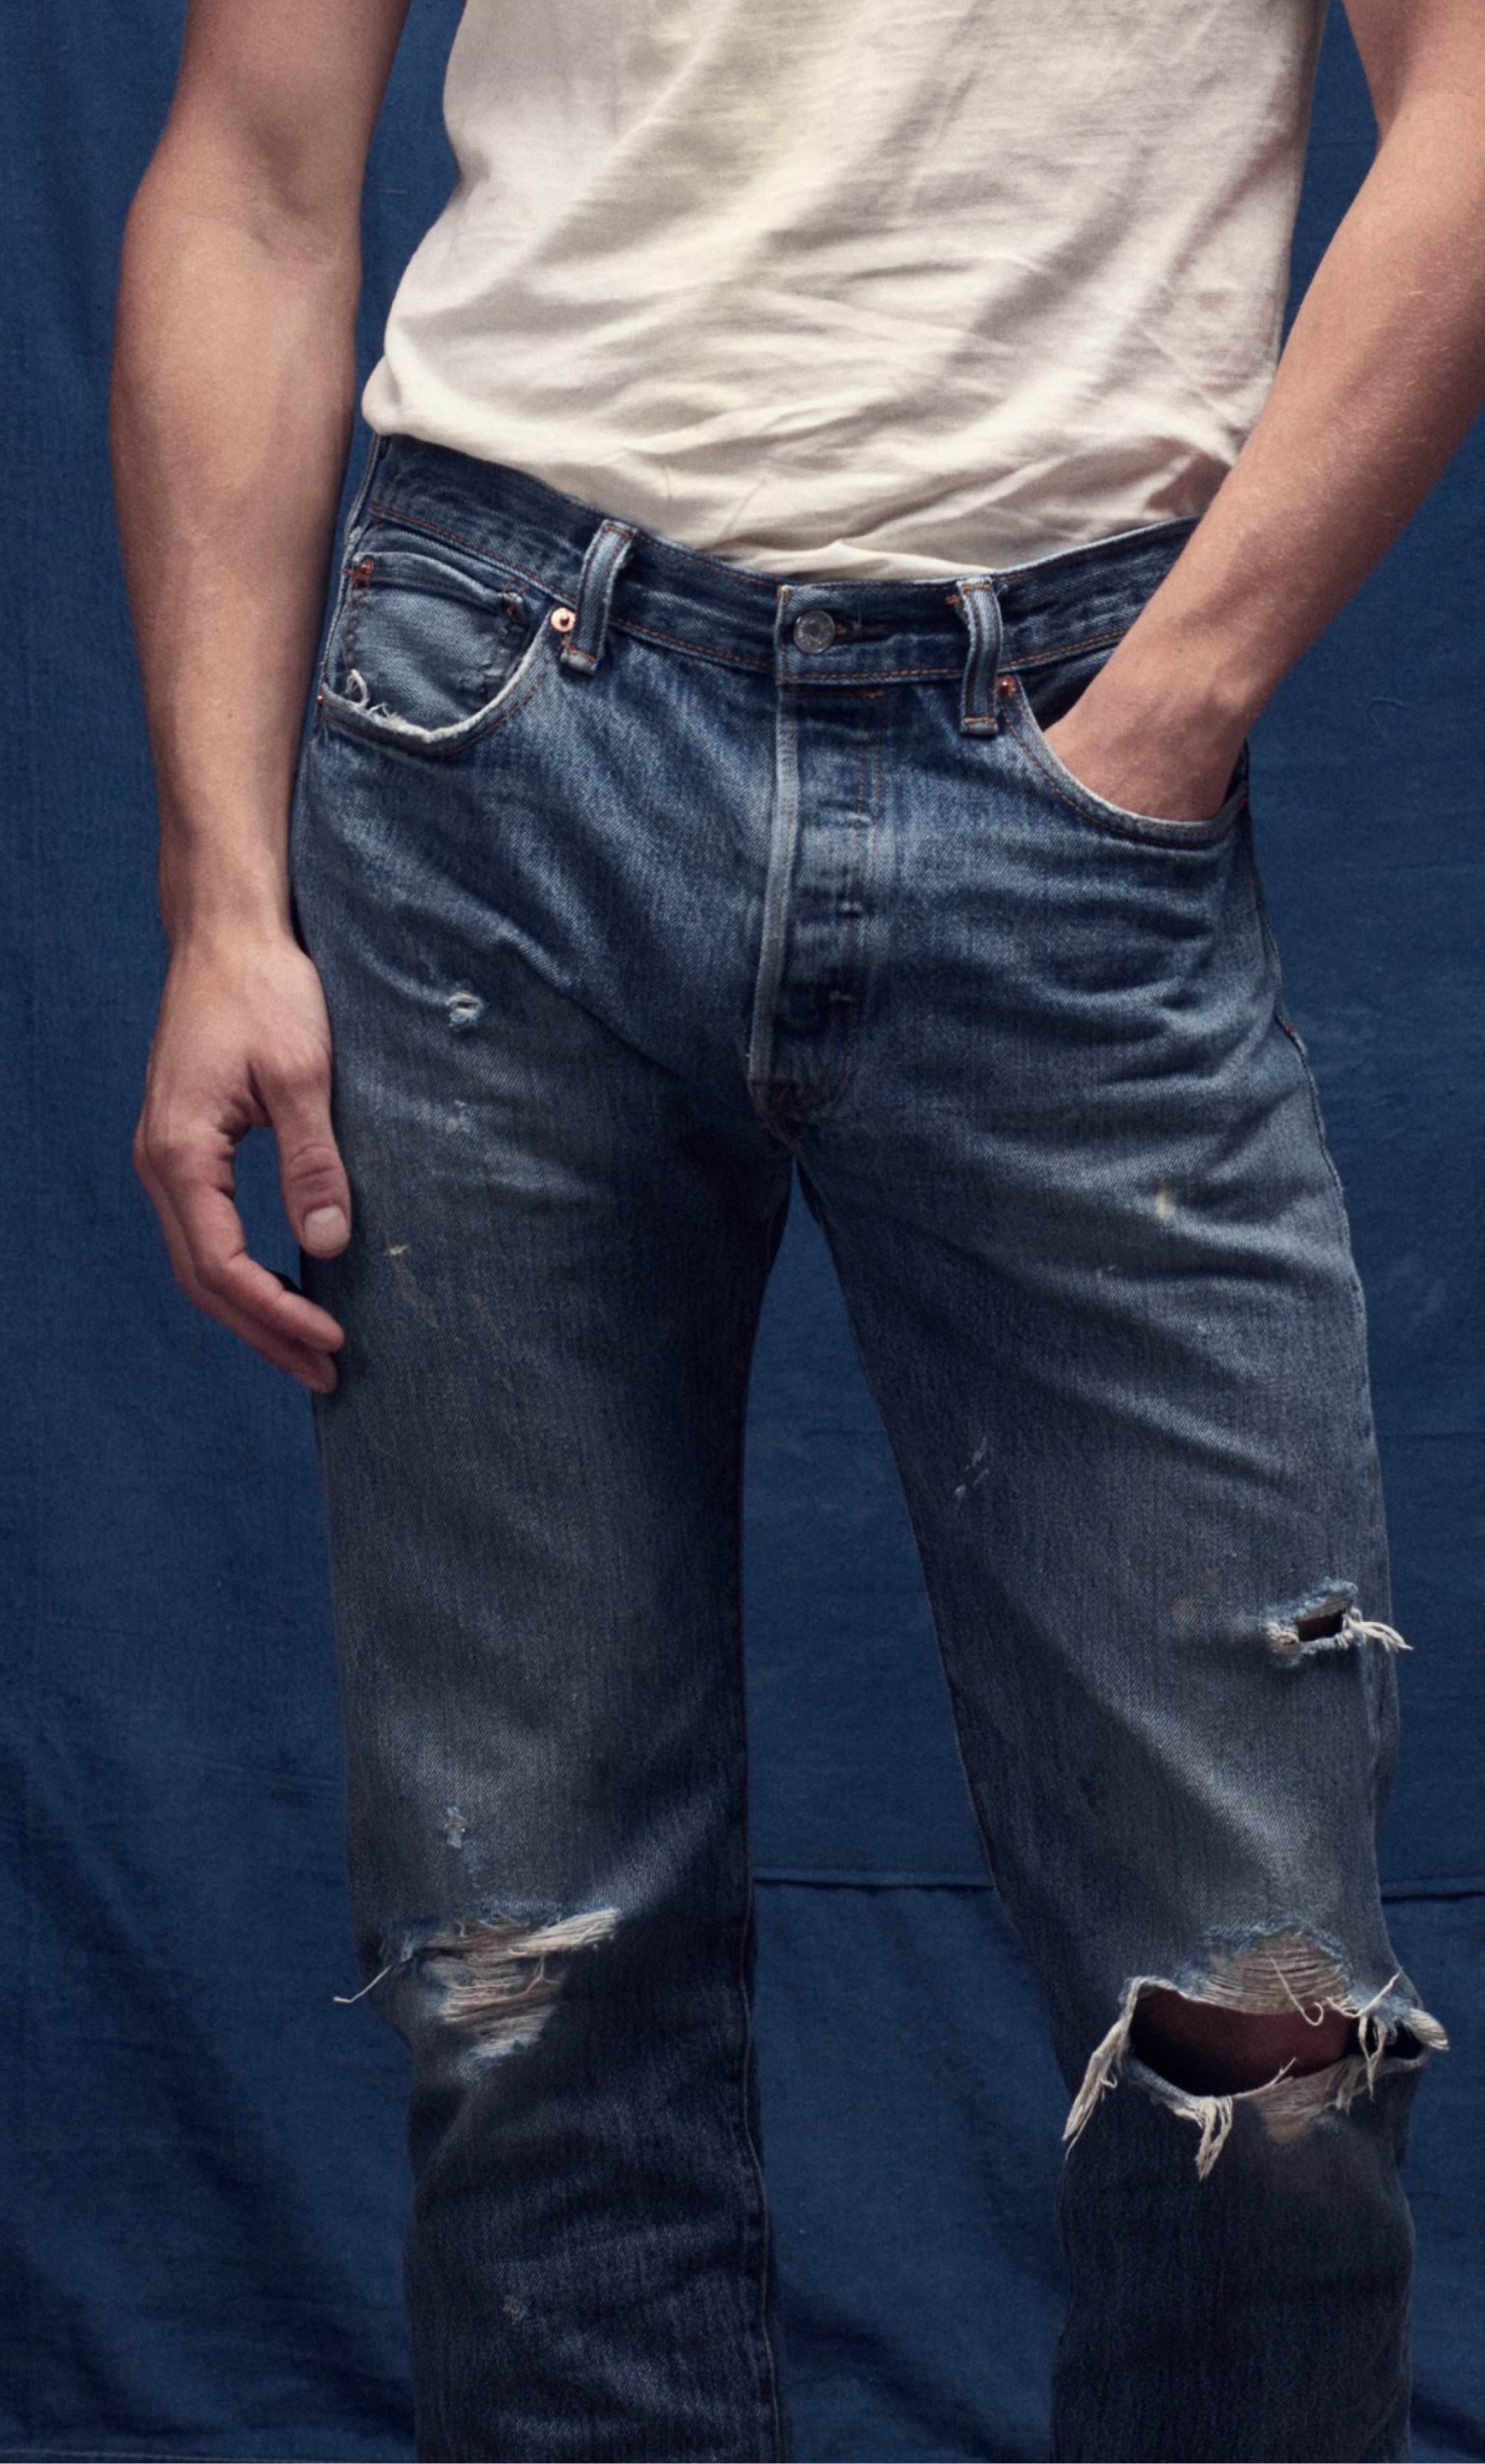 levis jeans official website